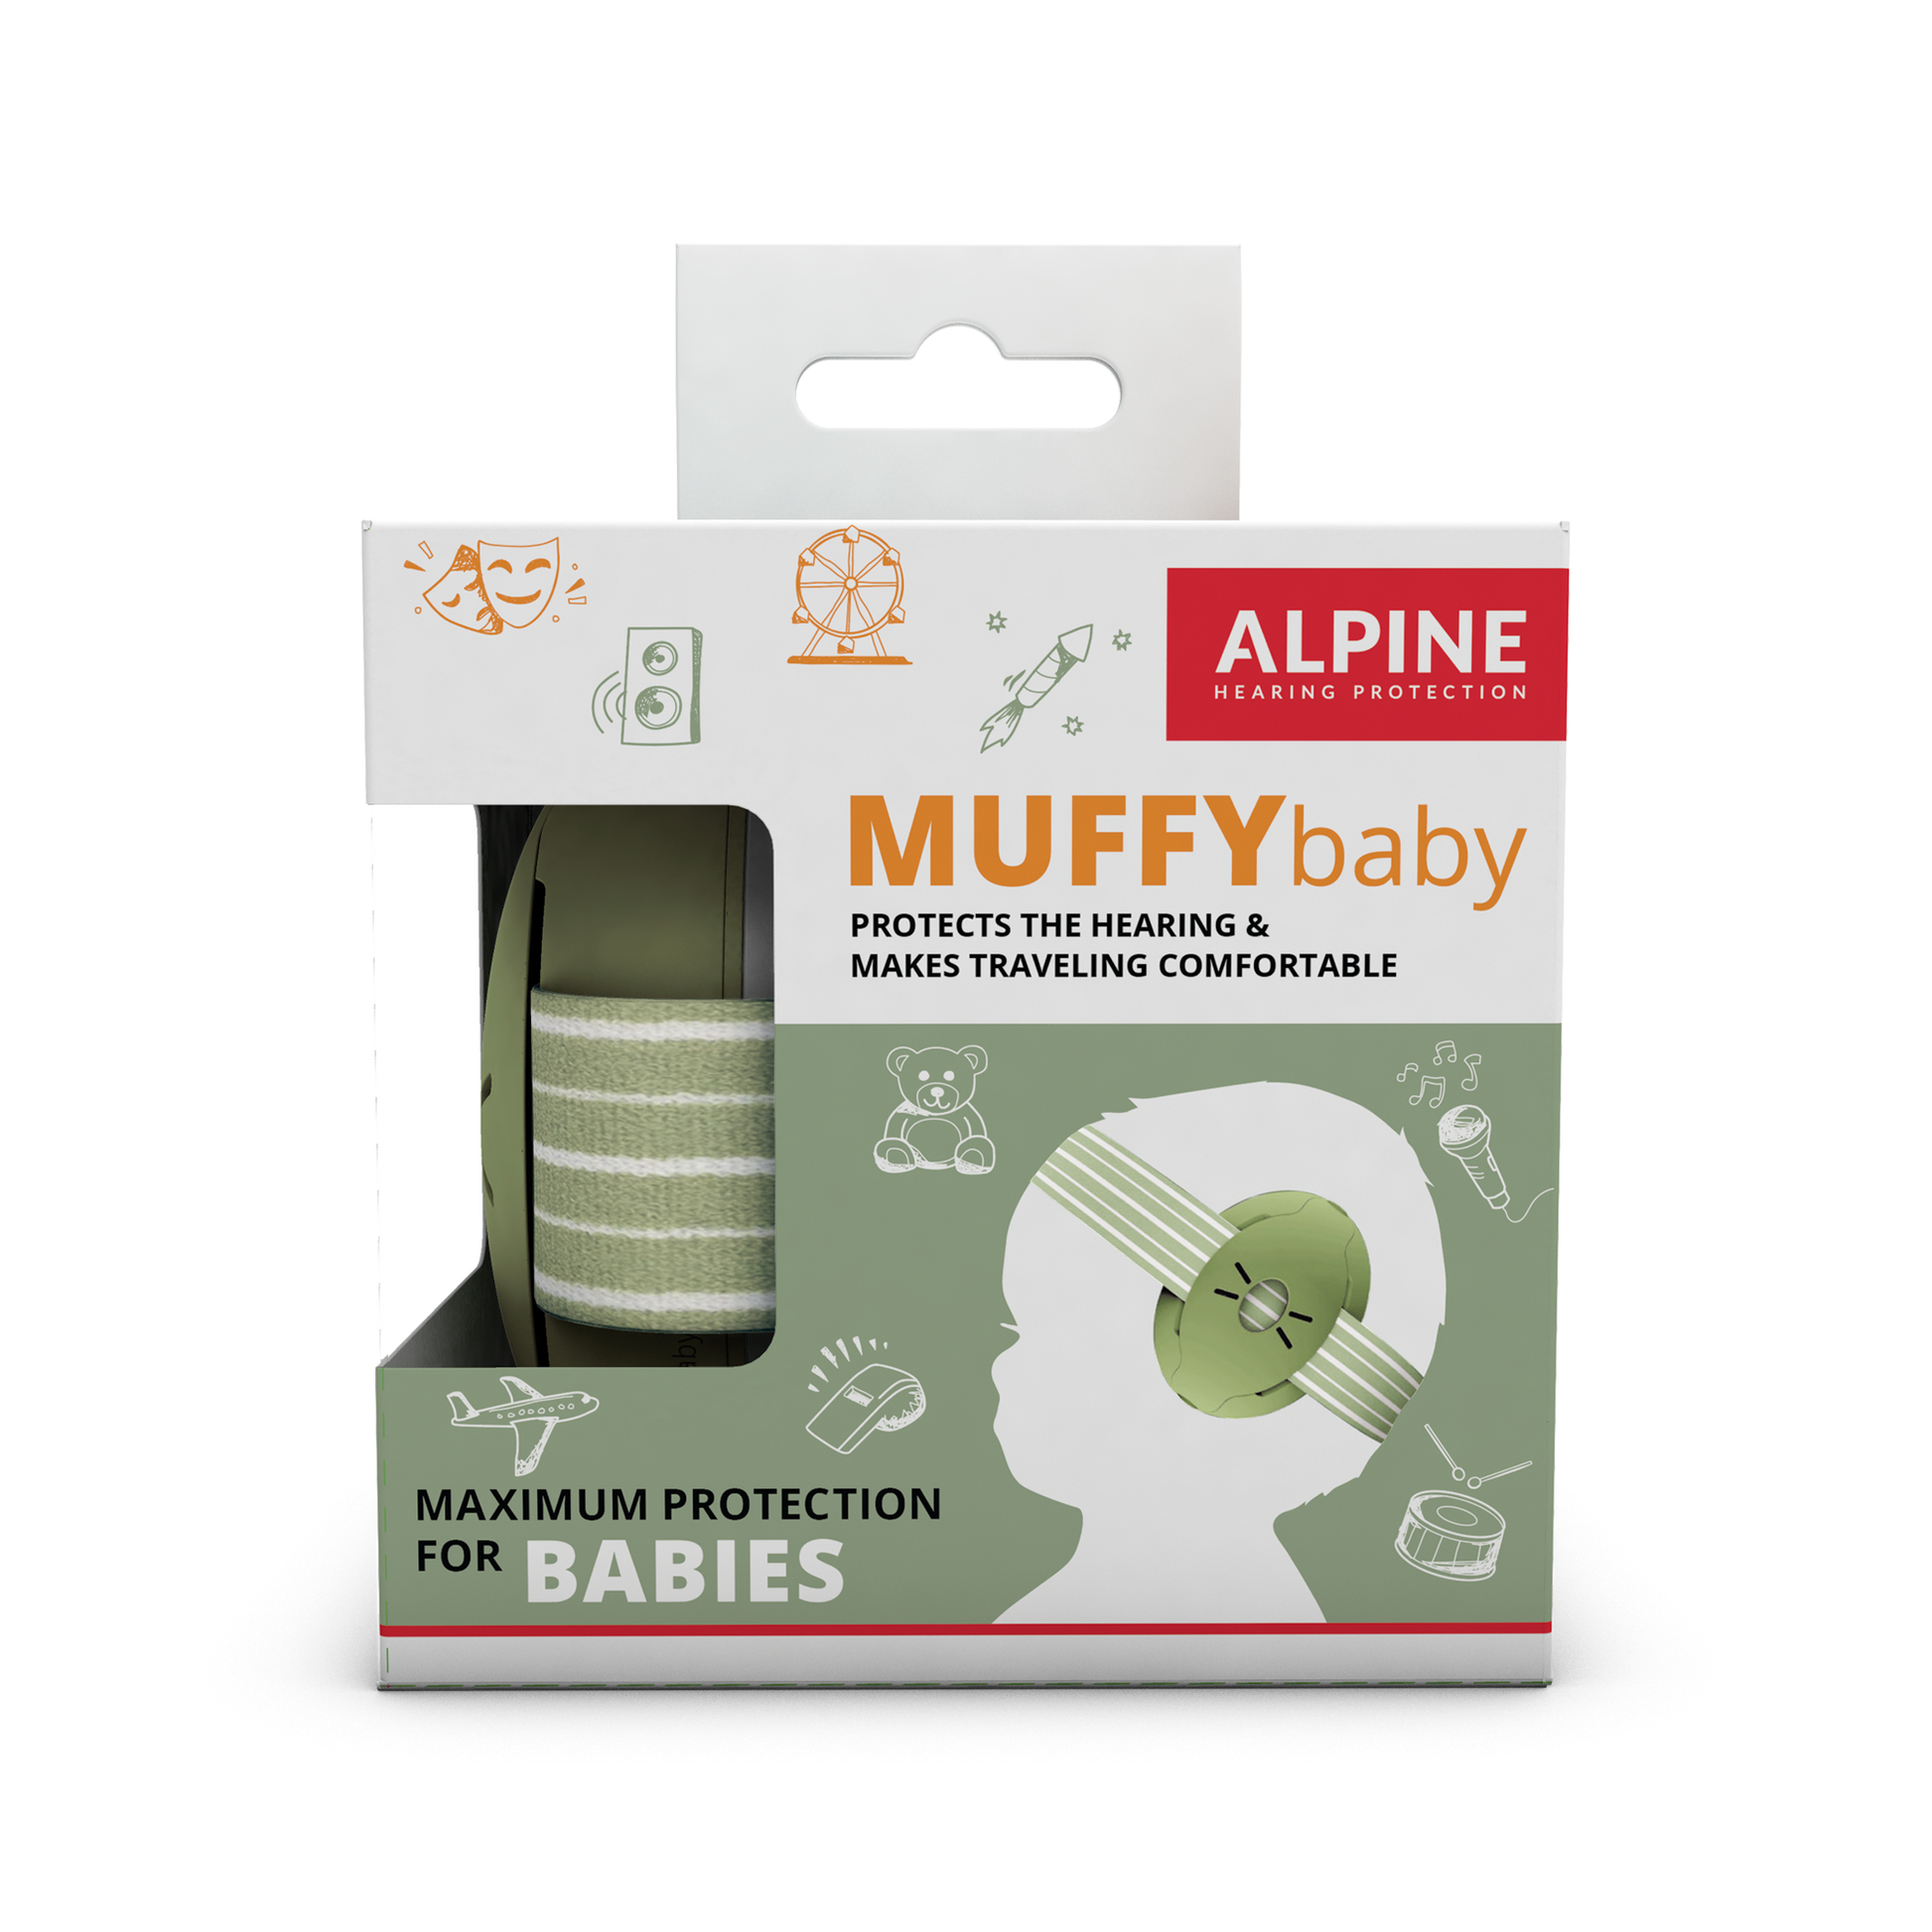 Casque anti-bruit Muffy Baby Black de Alpine, Sécurité domestique : Aubert